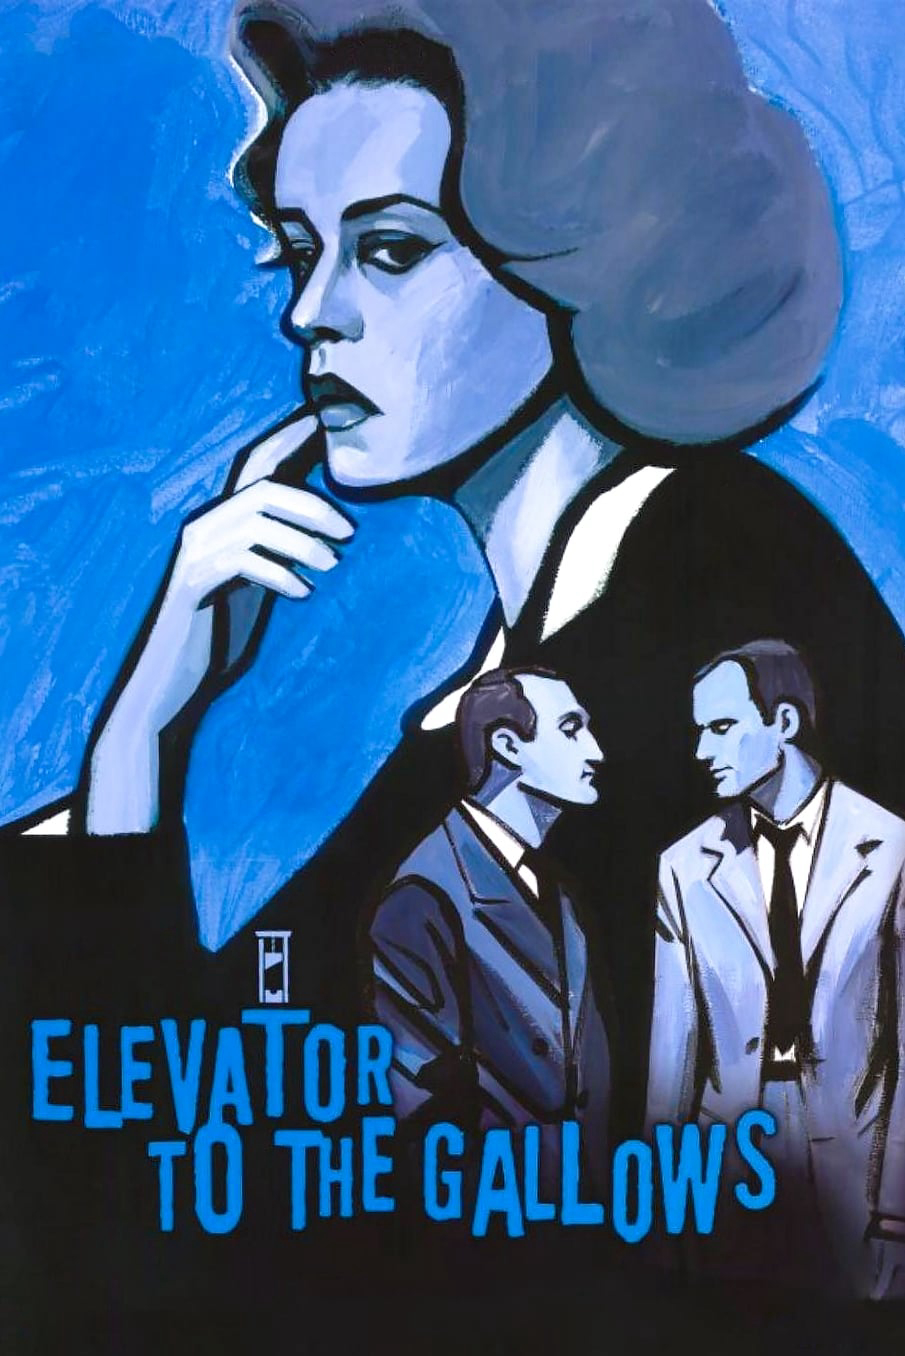 Elevator to the Gallows - Elevator to the Gallows